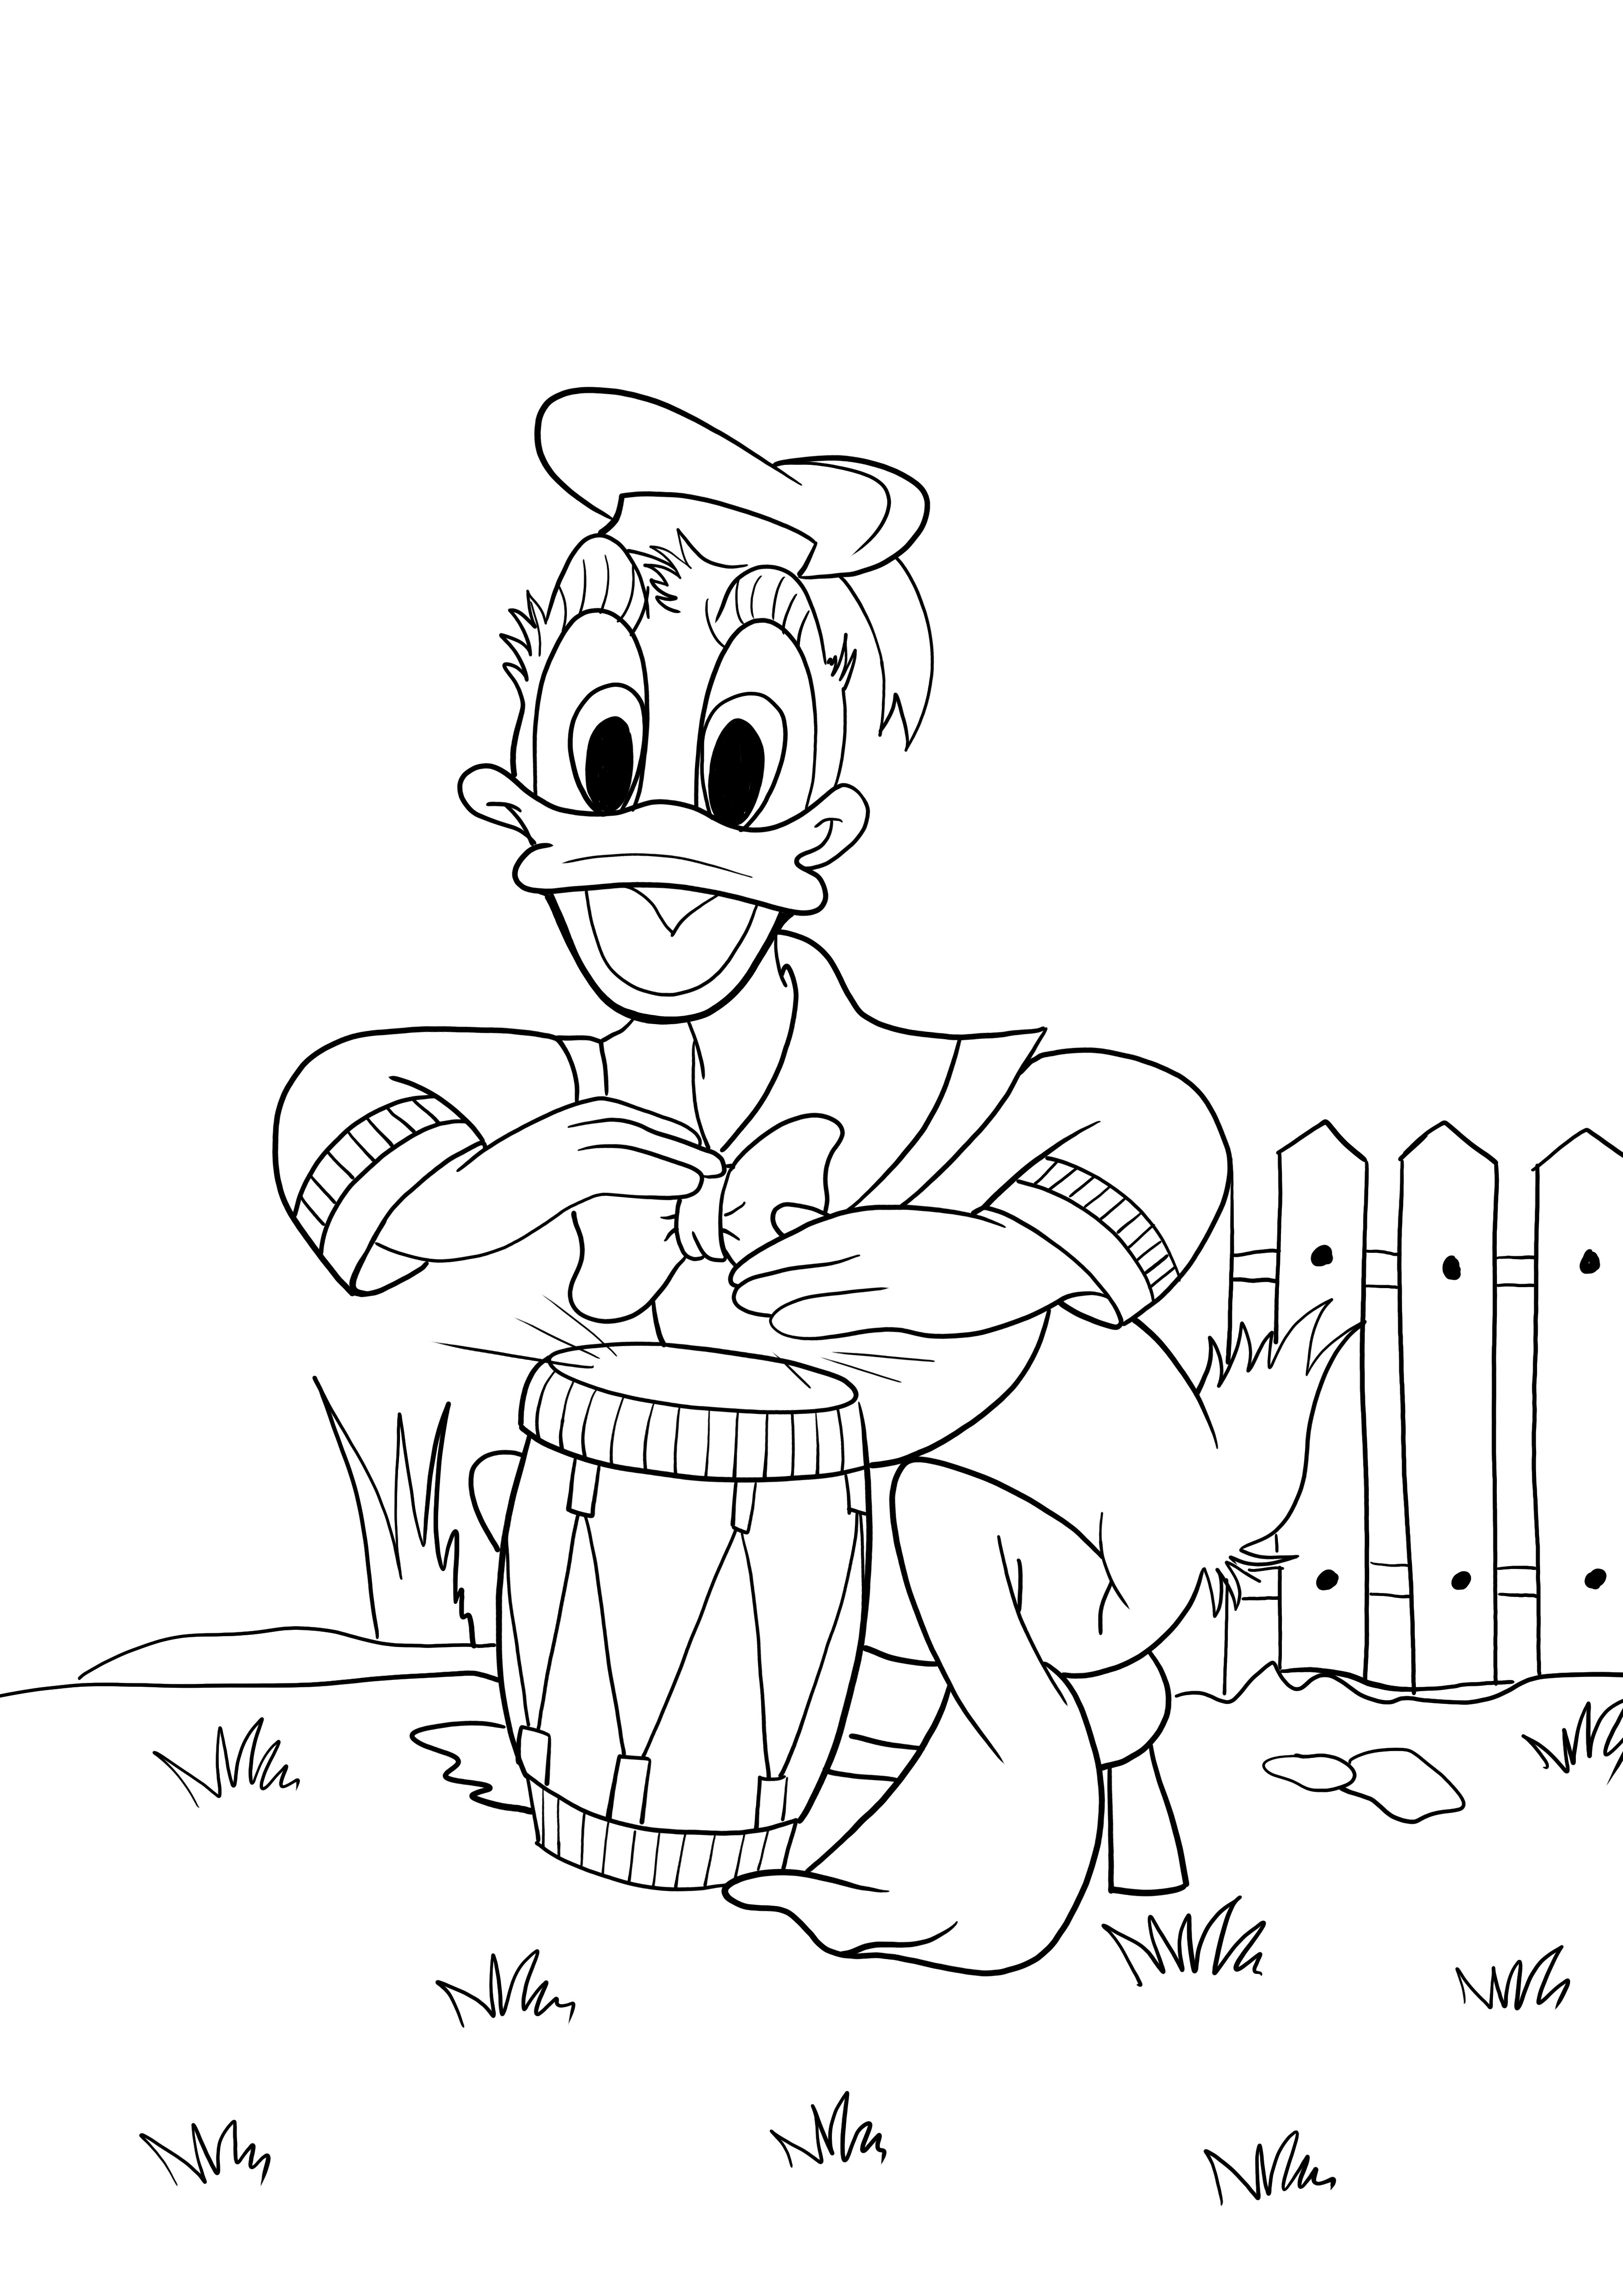 Feuille de Donald jouant de la batterie à colorier et imprimer gratuitement